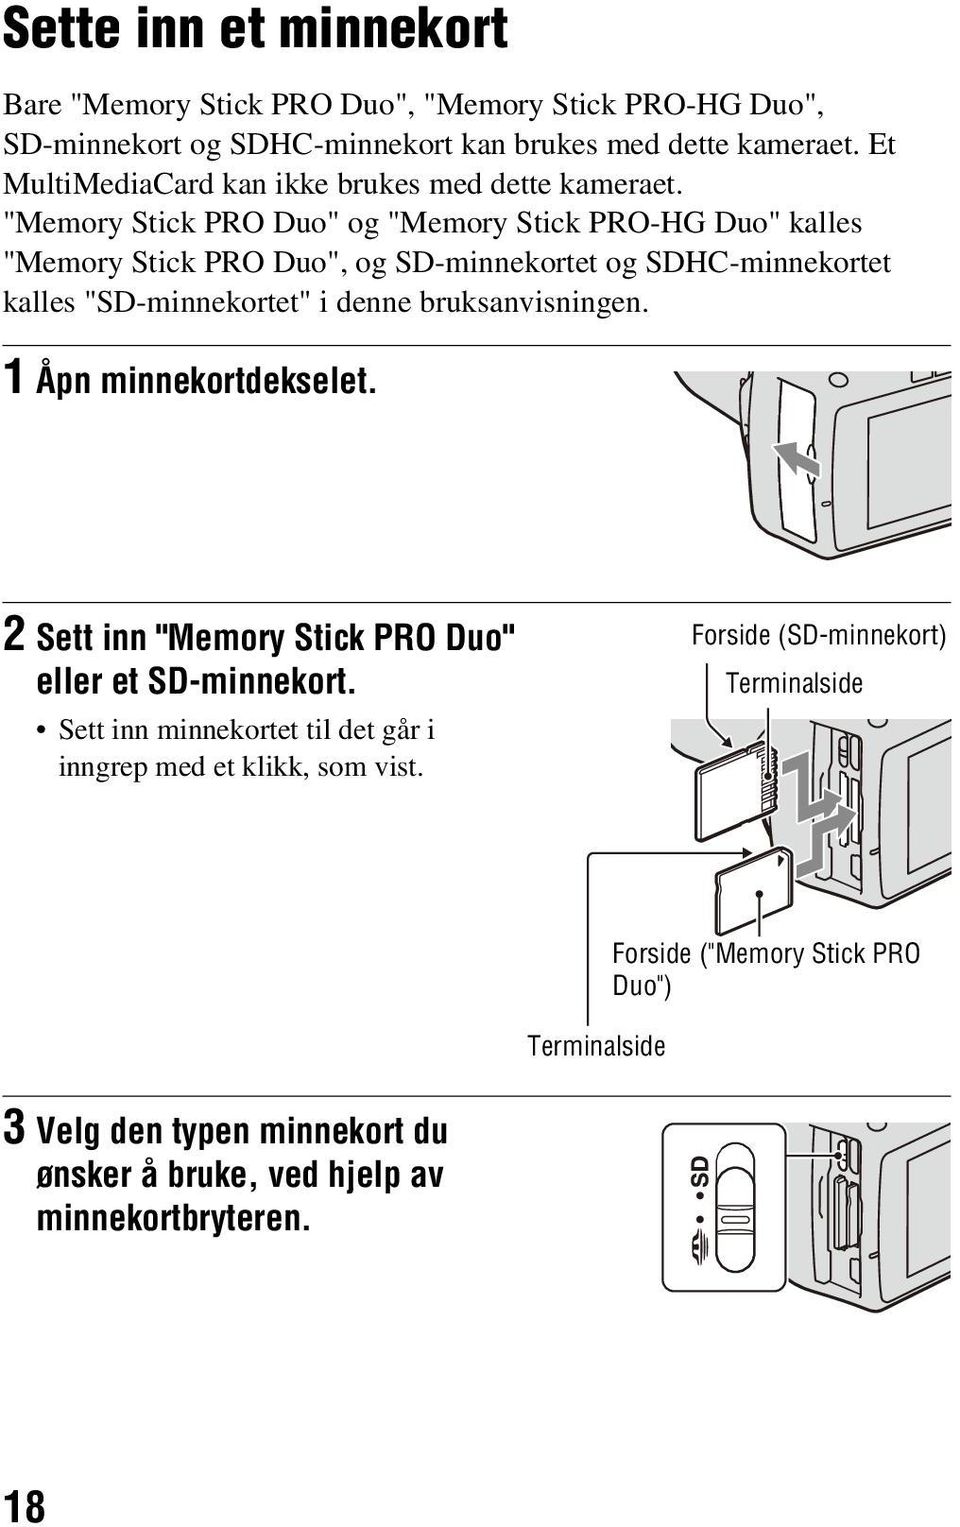 "Memory Stick PRO Duo" og "Memory Stick PRO-HG Duo" kalles "Memory Stick PRO Duo", og SD-minnekortet og SDHC-minnekortet kalles "SD-minnekortet" i denne bruksanvisningen.